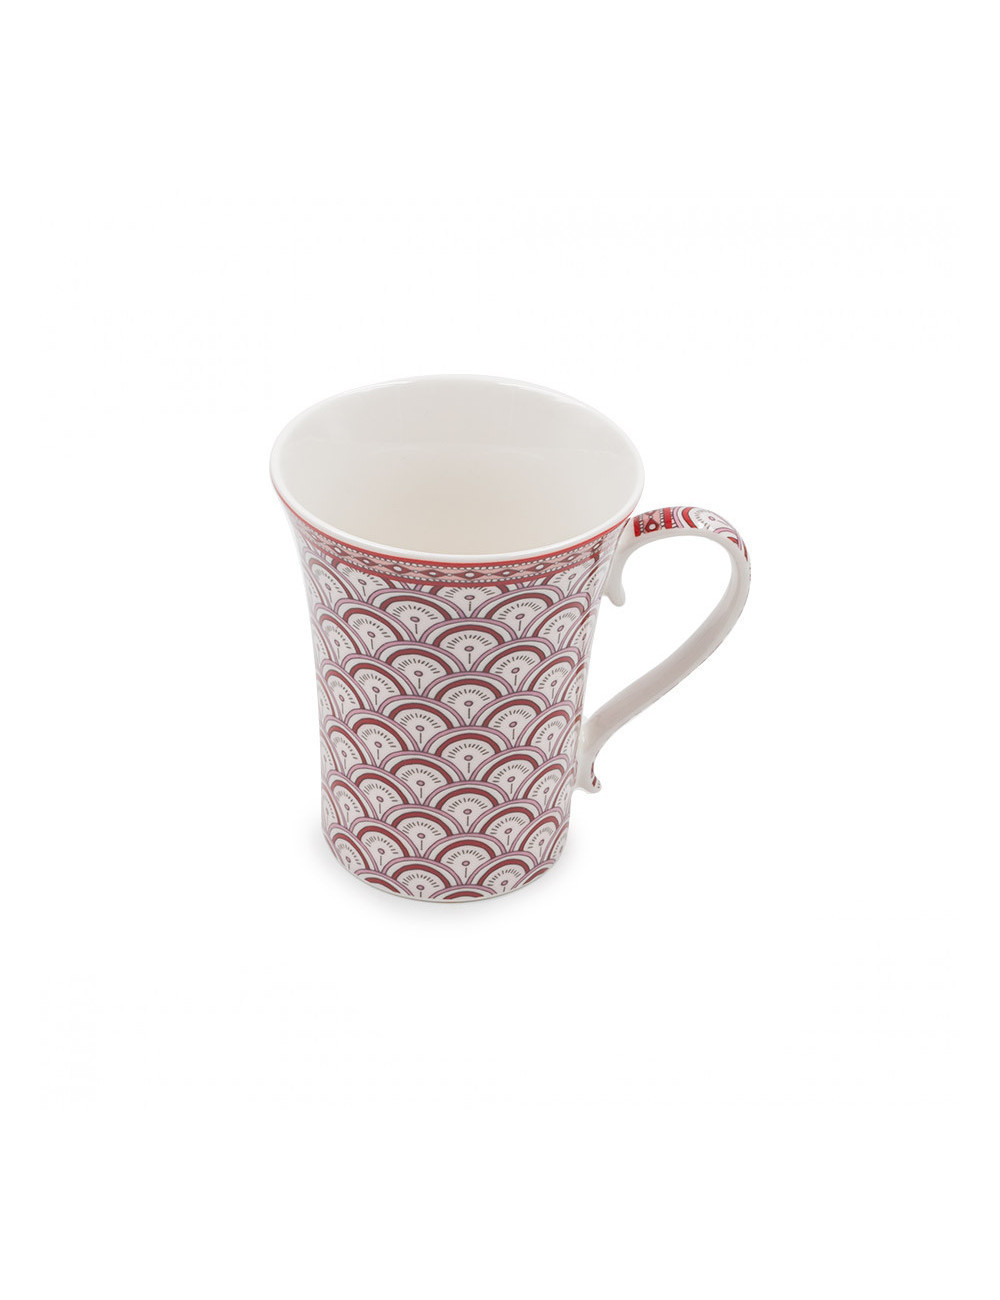 Elegante mug in porcellana Season decorata con ventagli rossi - La Pianta del Tè acquista online